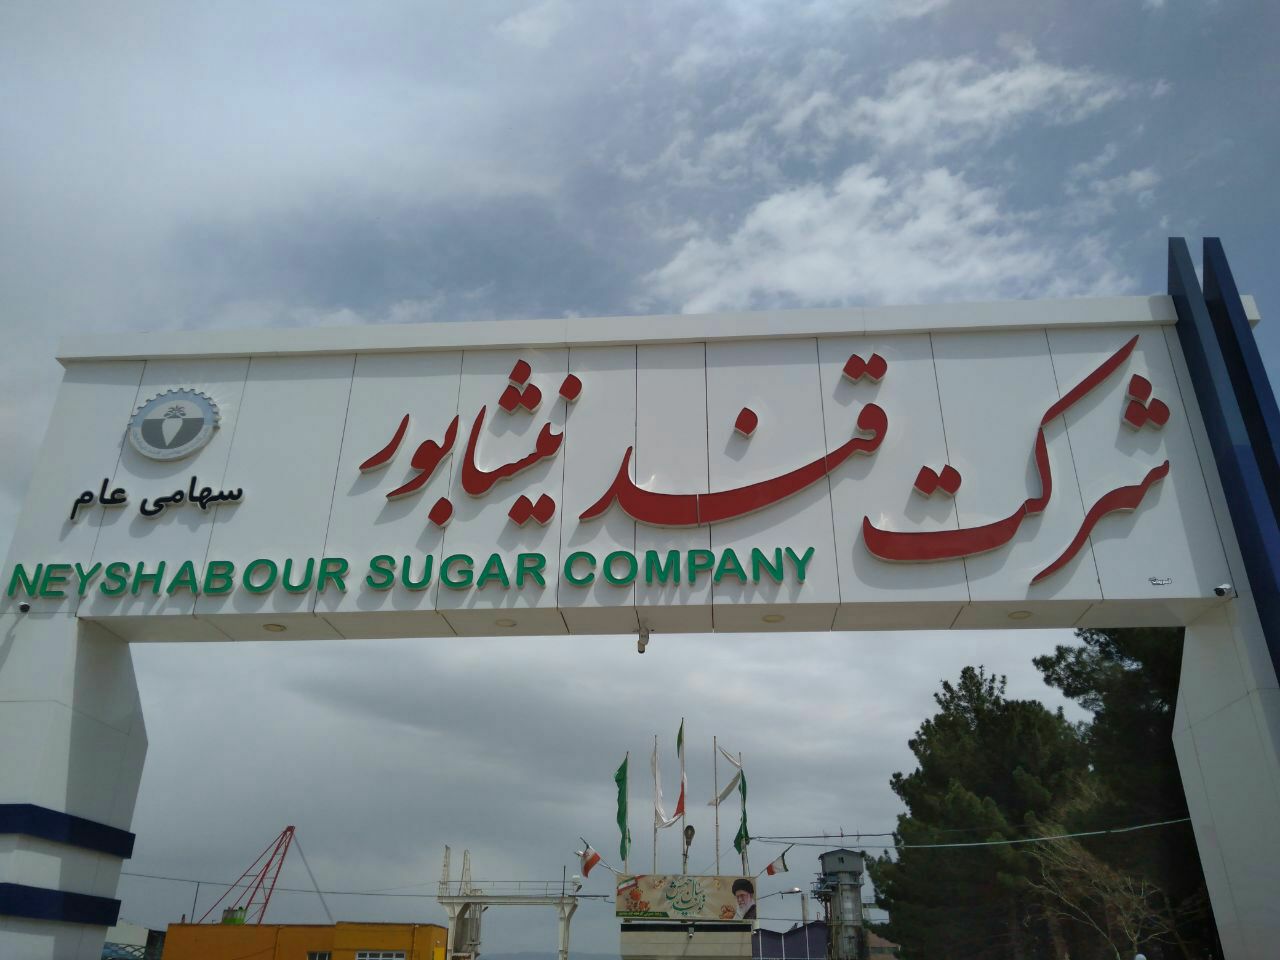 کارگران کارخانه قند فیروزه با اختصاص بخشی ازحقوق خود به رزمایش مواسات وکمک مومنانه درآستانه ماه مبارک رمضان پیوستند.